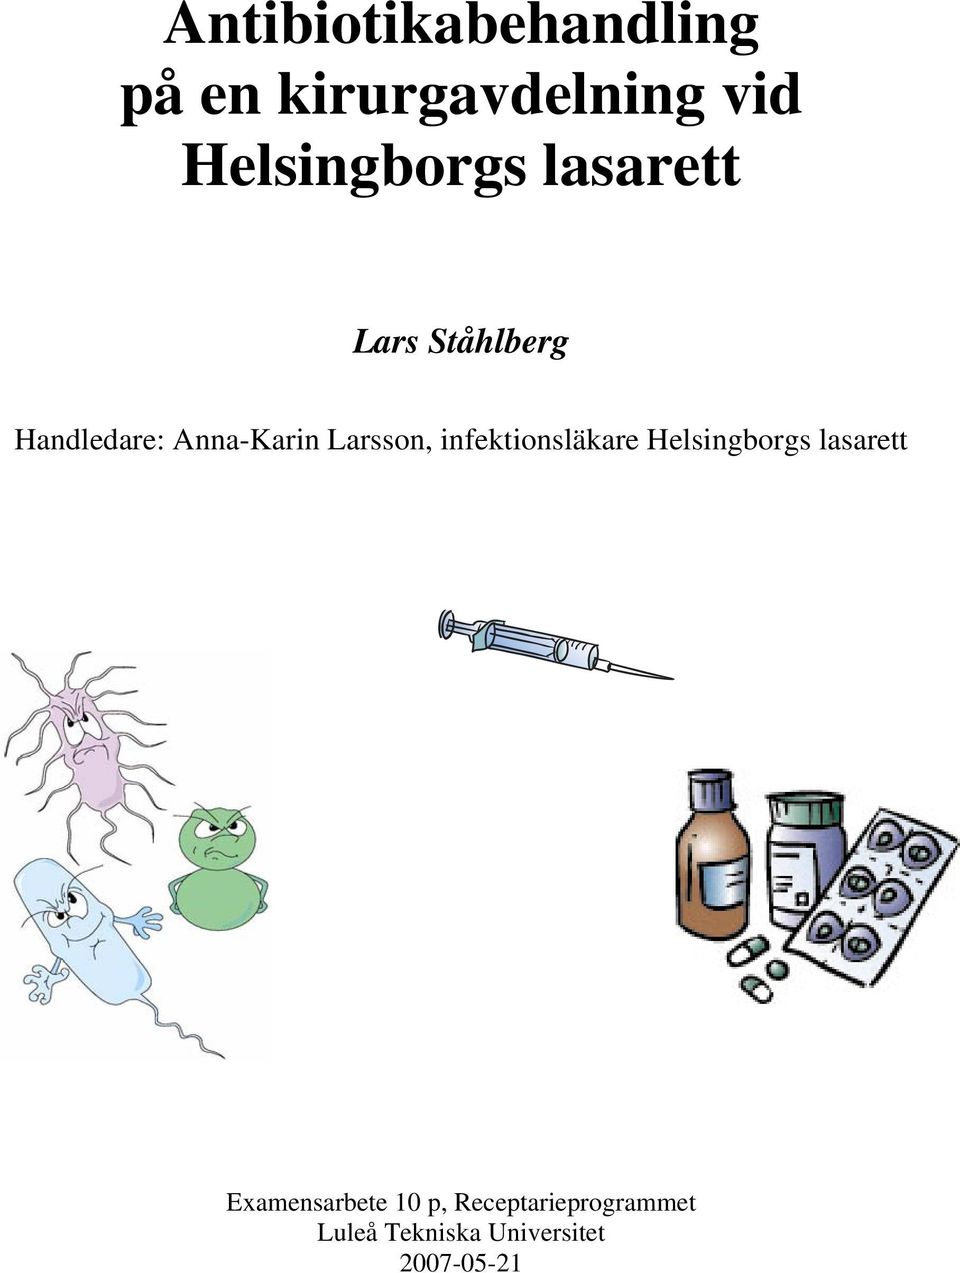 Anna-Karin Larsson, infektionsläkare Helsingborgs lasarett